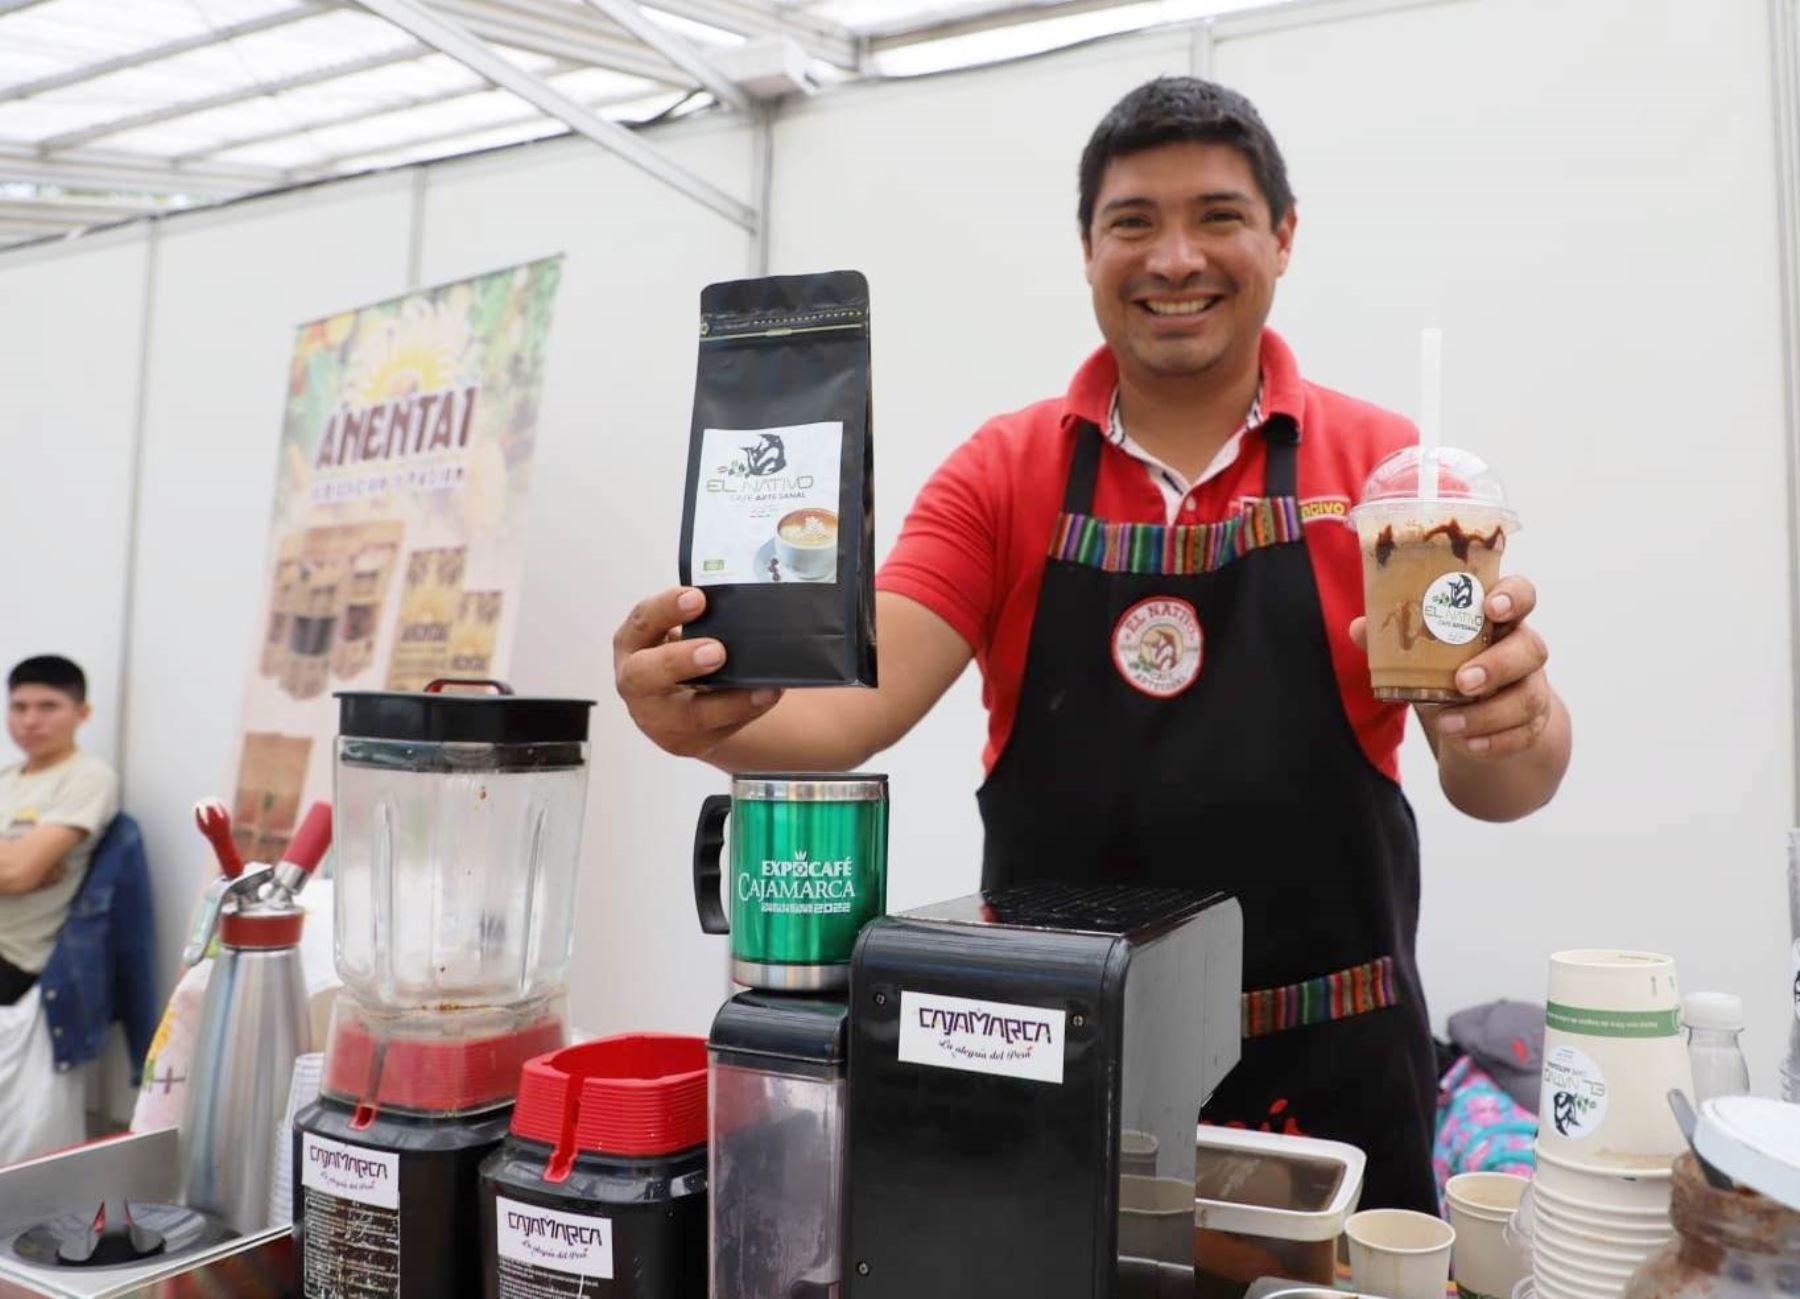 Productores de café de Jaén y San Ignacio, región Cajamarca, logran ventas por más de S/ 400,000 gracias a una subasta en la reciente feria Expocafé que se desarrolló en la provincia de San Ignacio. ANDINA/Difusión